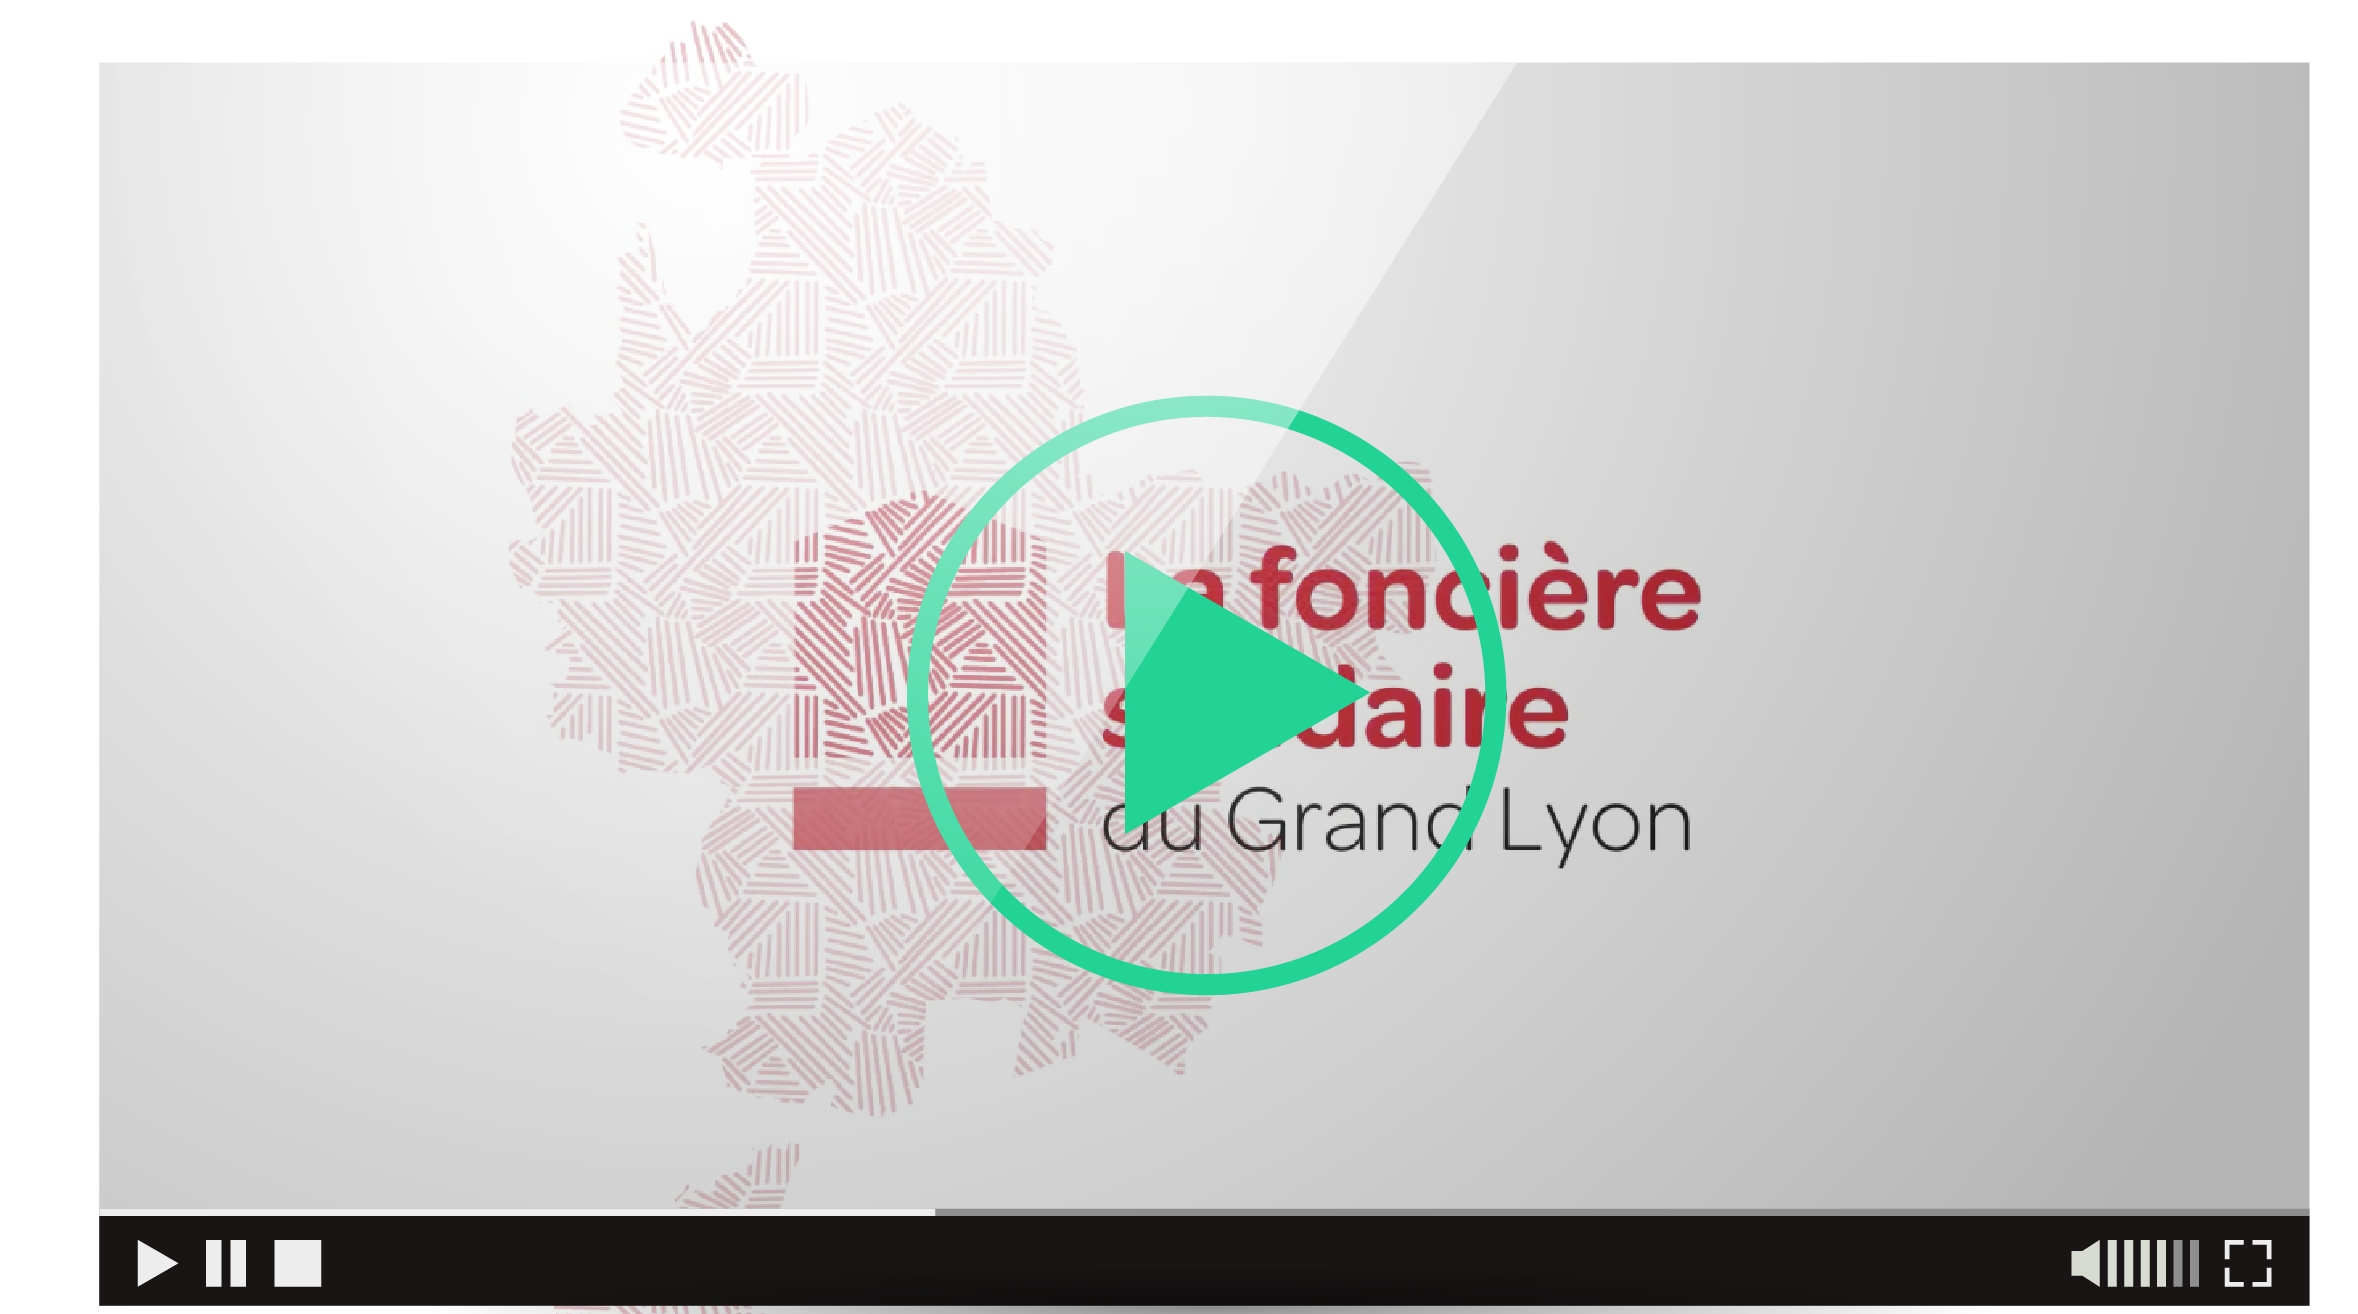 La foncière solidaire du Grand Lyon